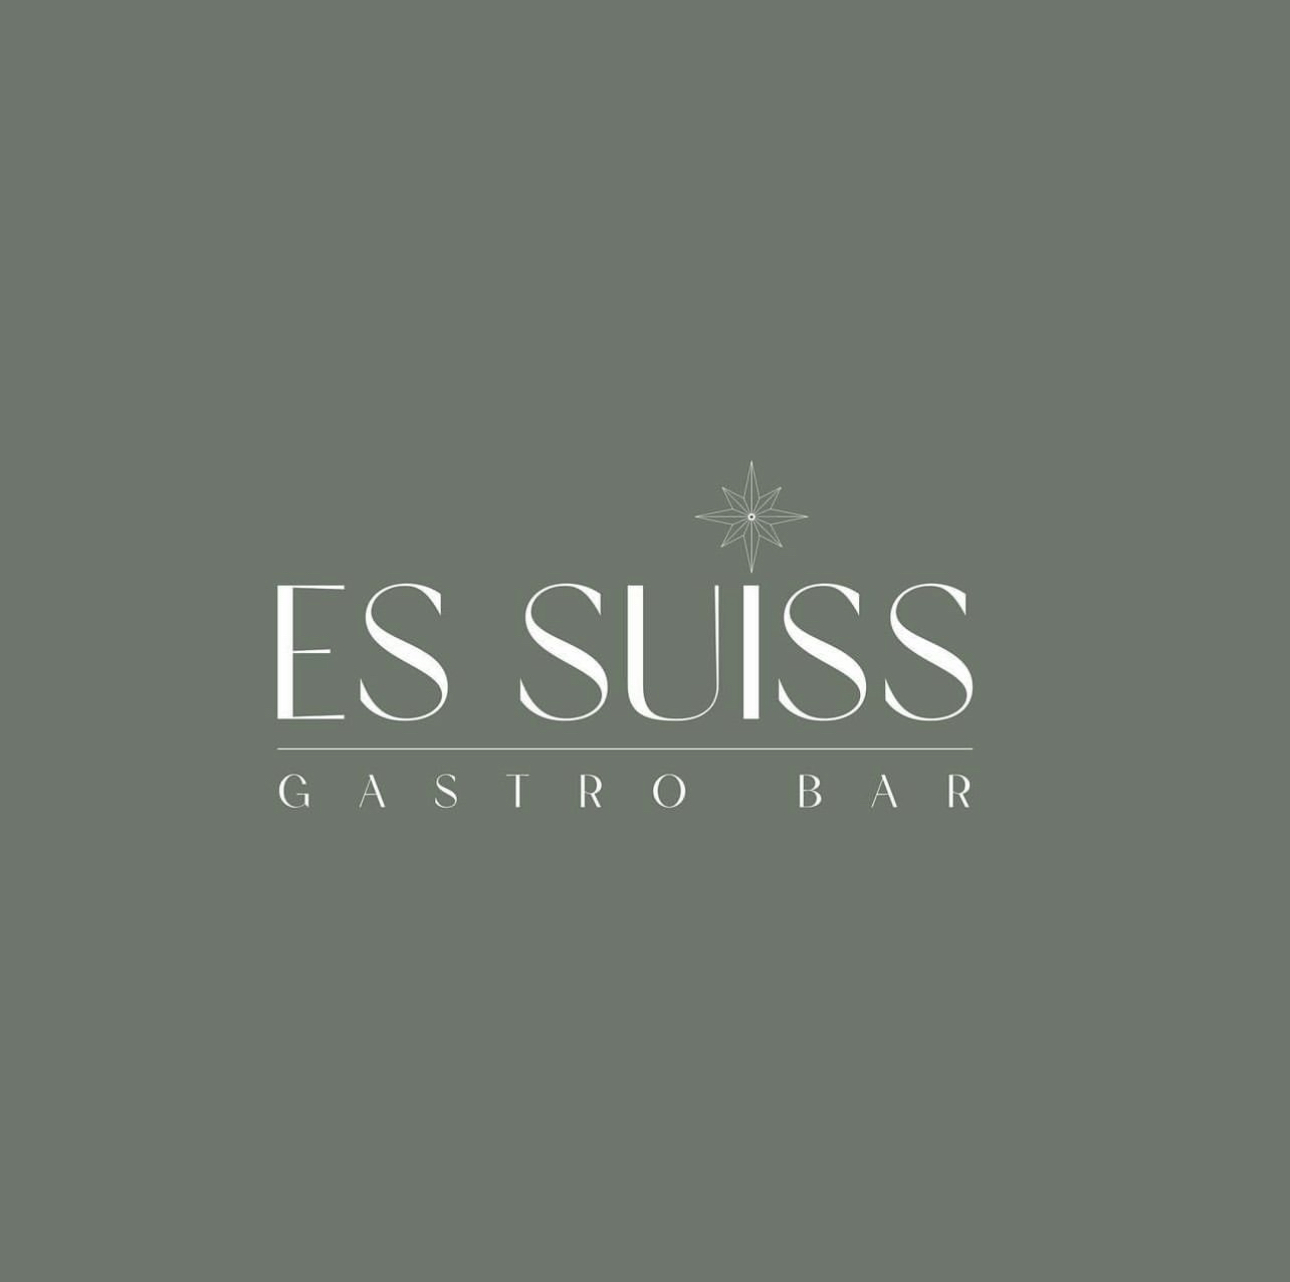 Es SUISS Gastro Bar